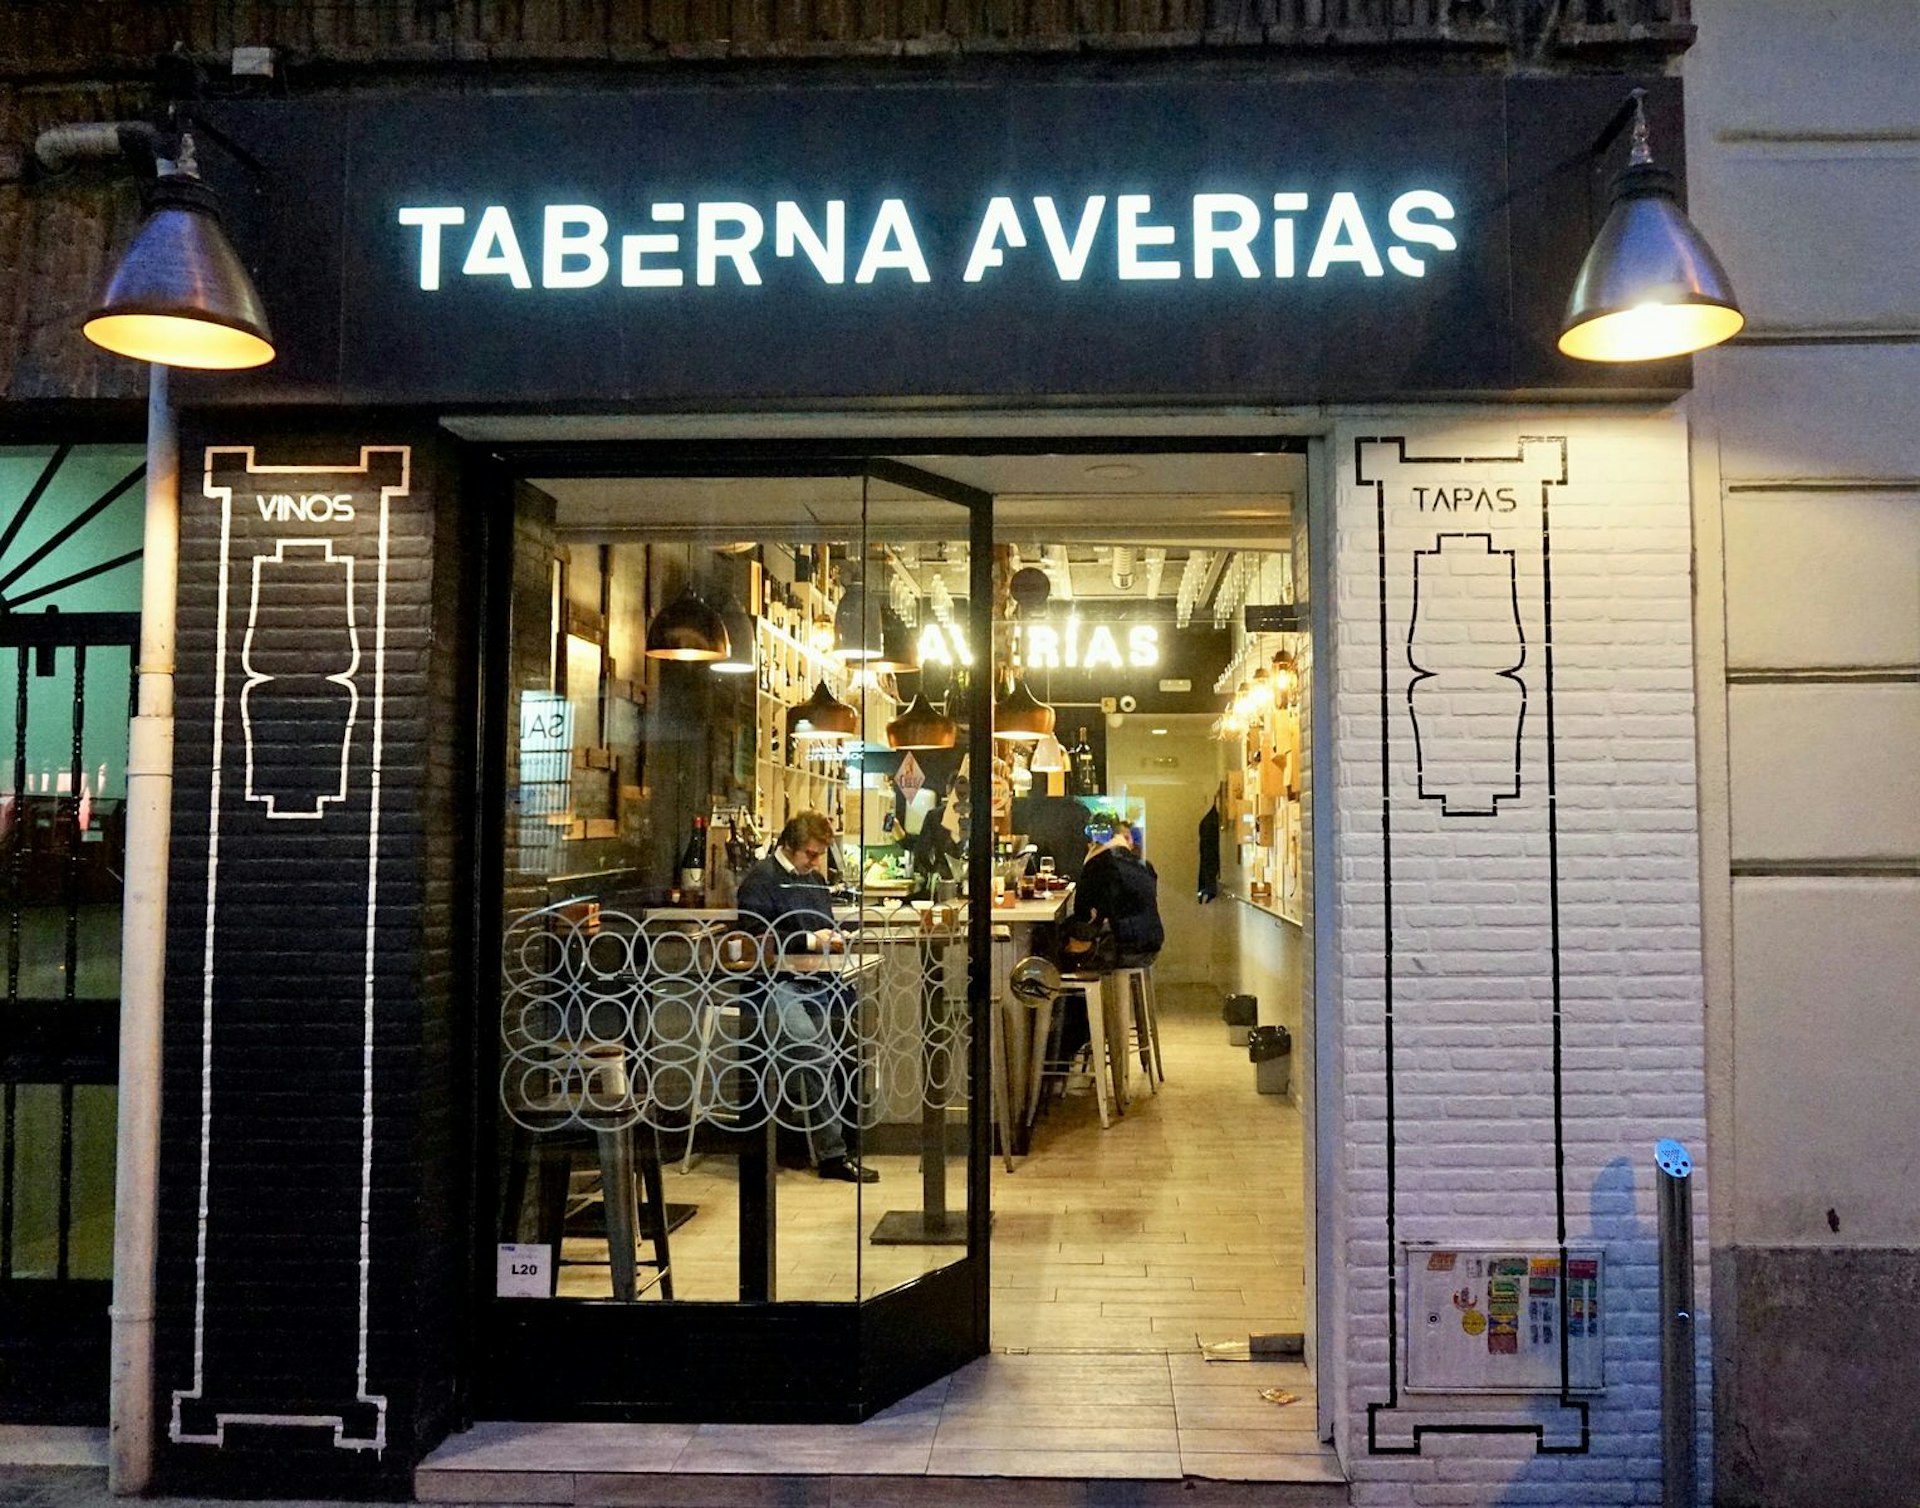 The exterior of Taberna Averías, Calle Ponzano